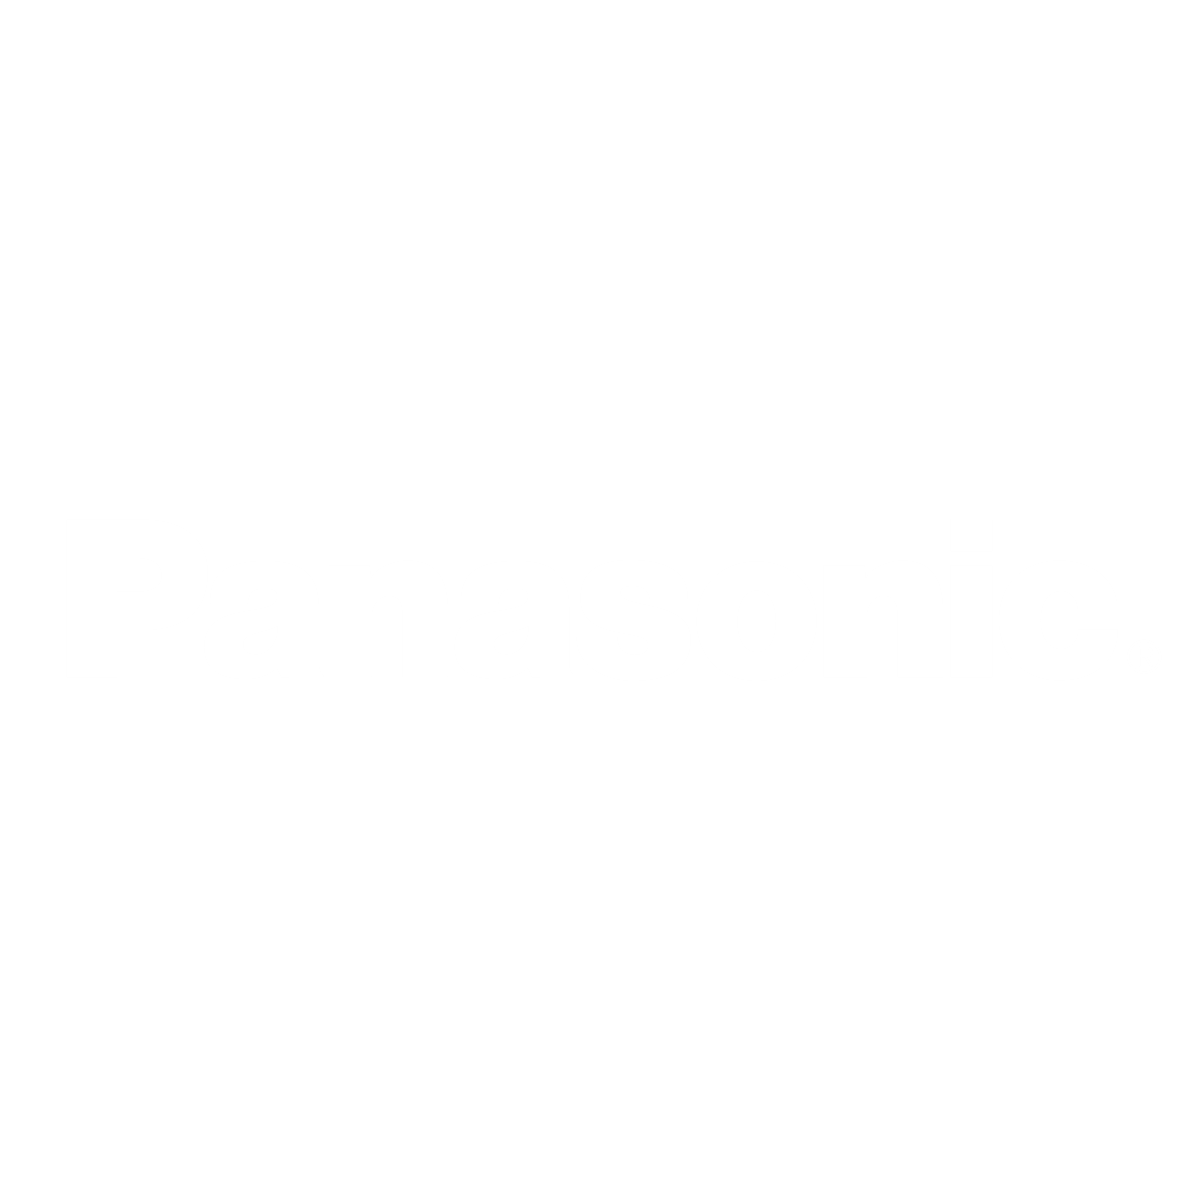 Panasonic Logo White